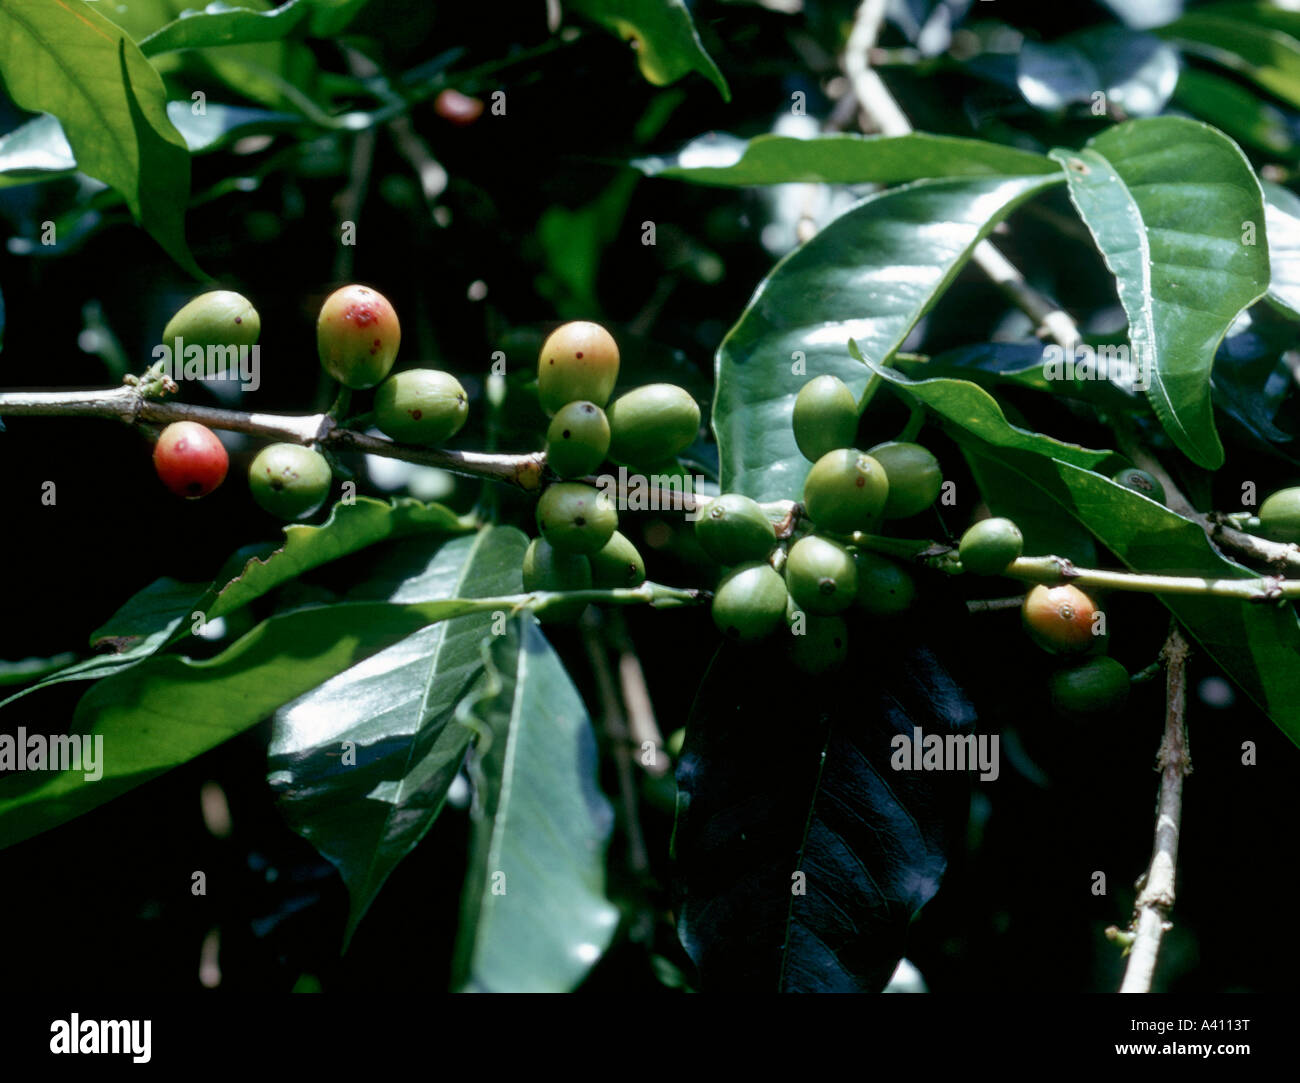 Le café, Coffea arabica, des fruits appelés "cerises" Banque D'Images